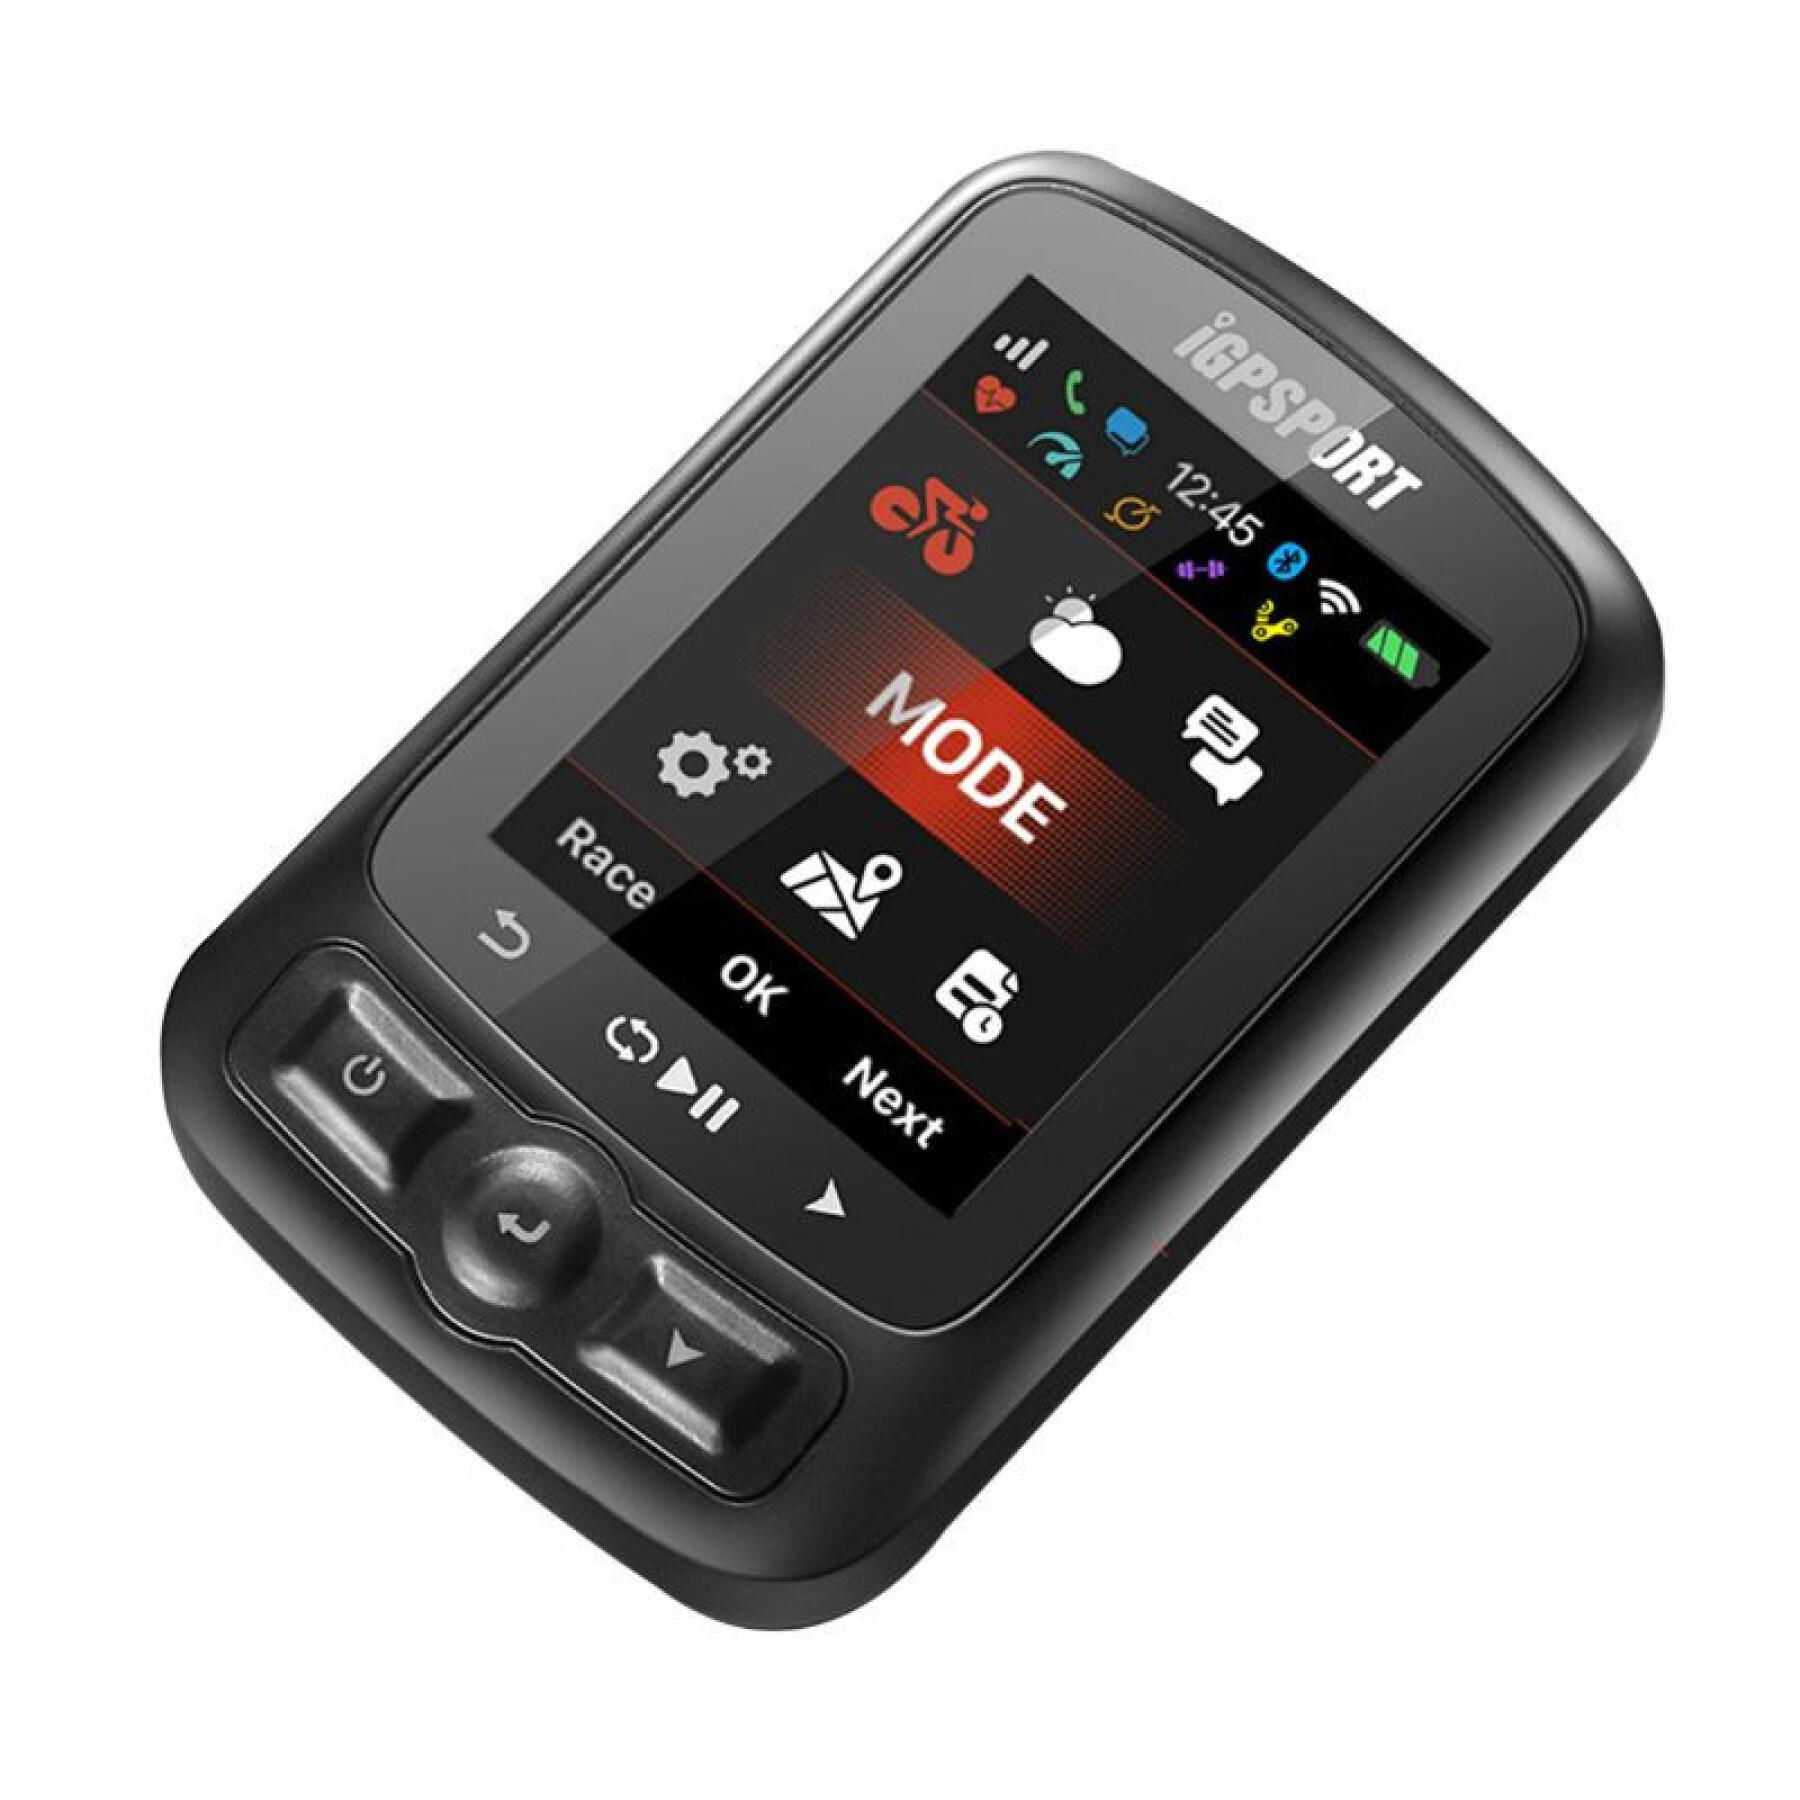 Gps - compteur avec vitesse, altimètre, température compatible strava - option: capteur cadence, vitesse et cardio Igpsport